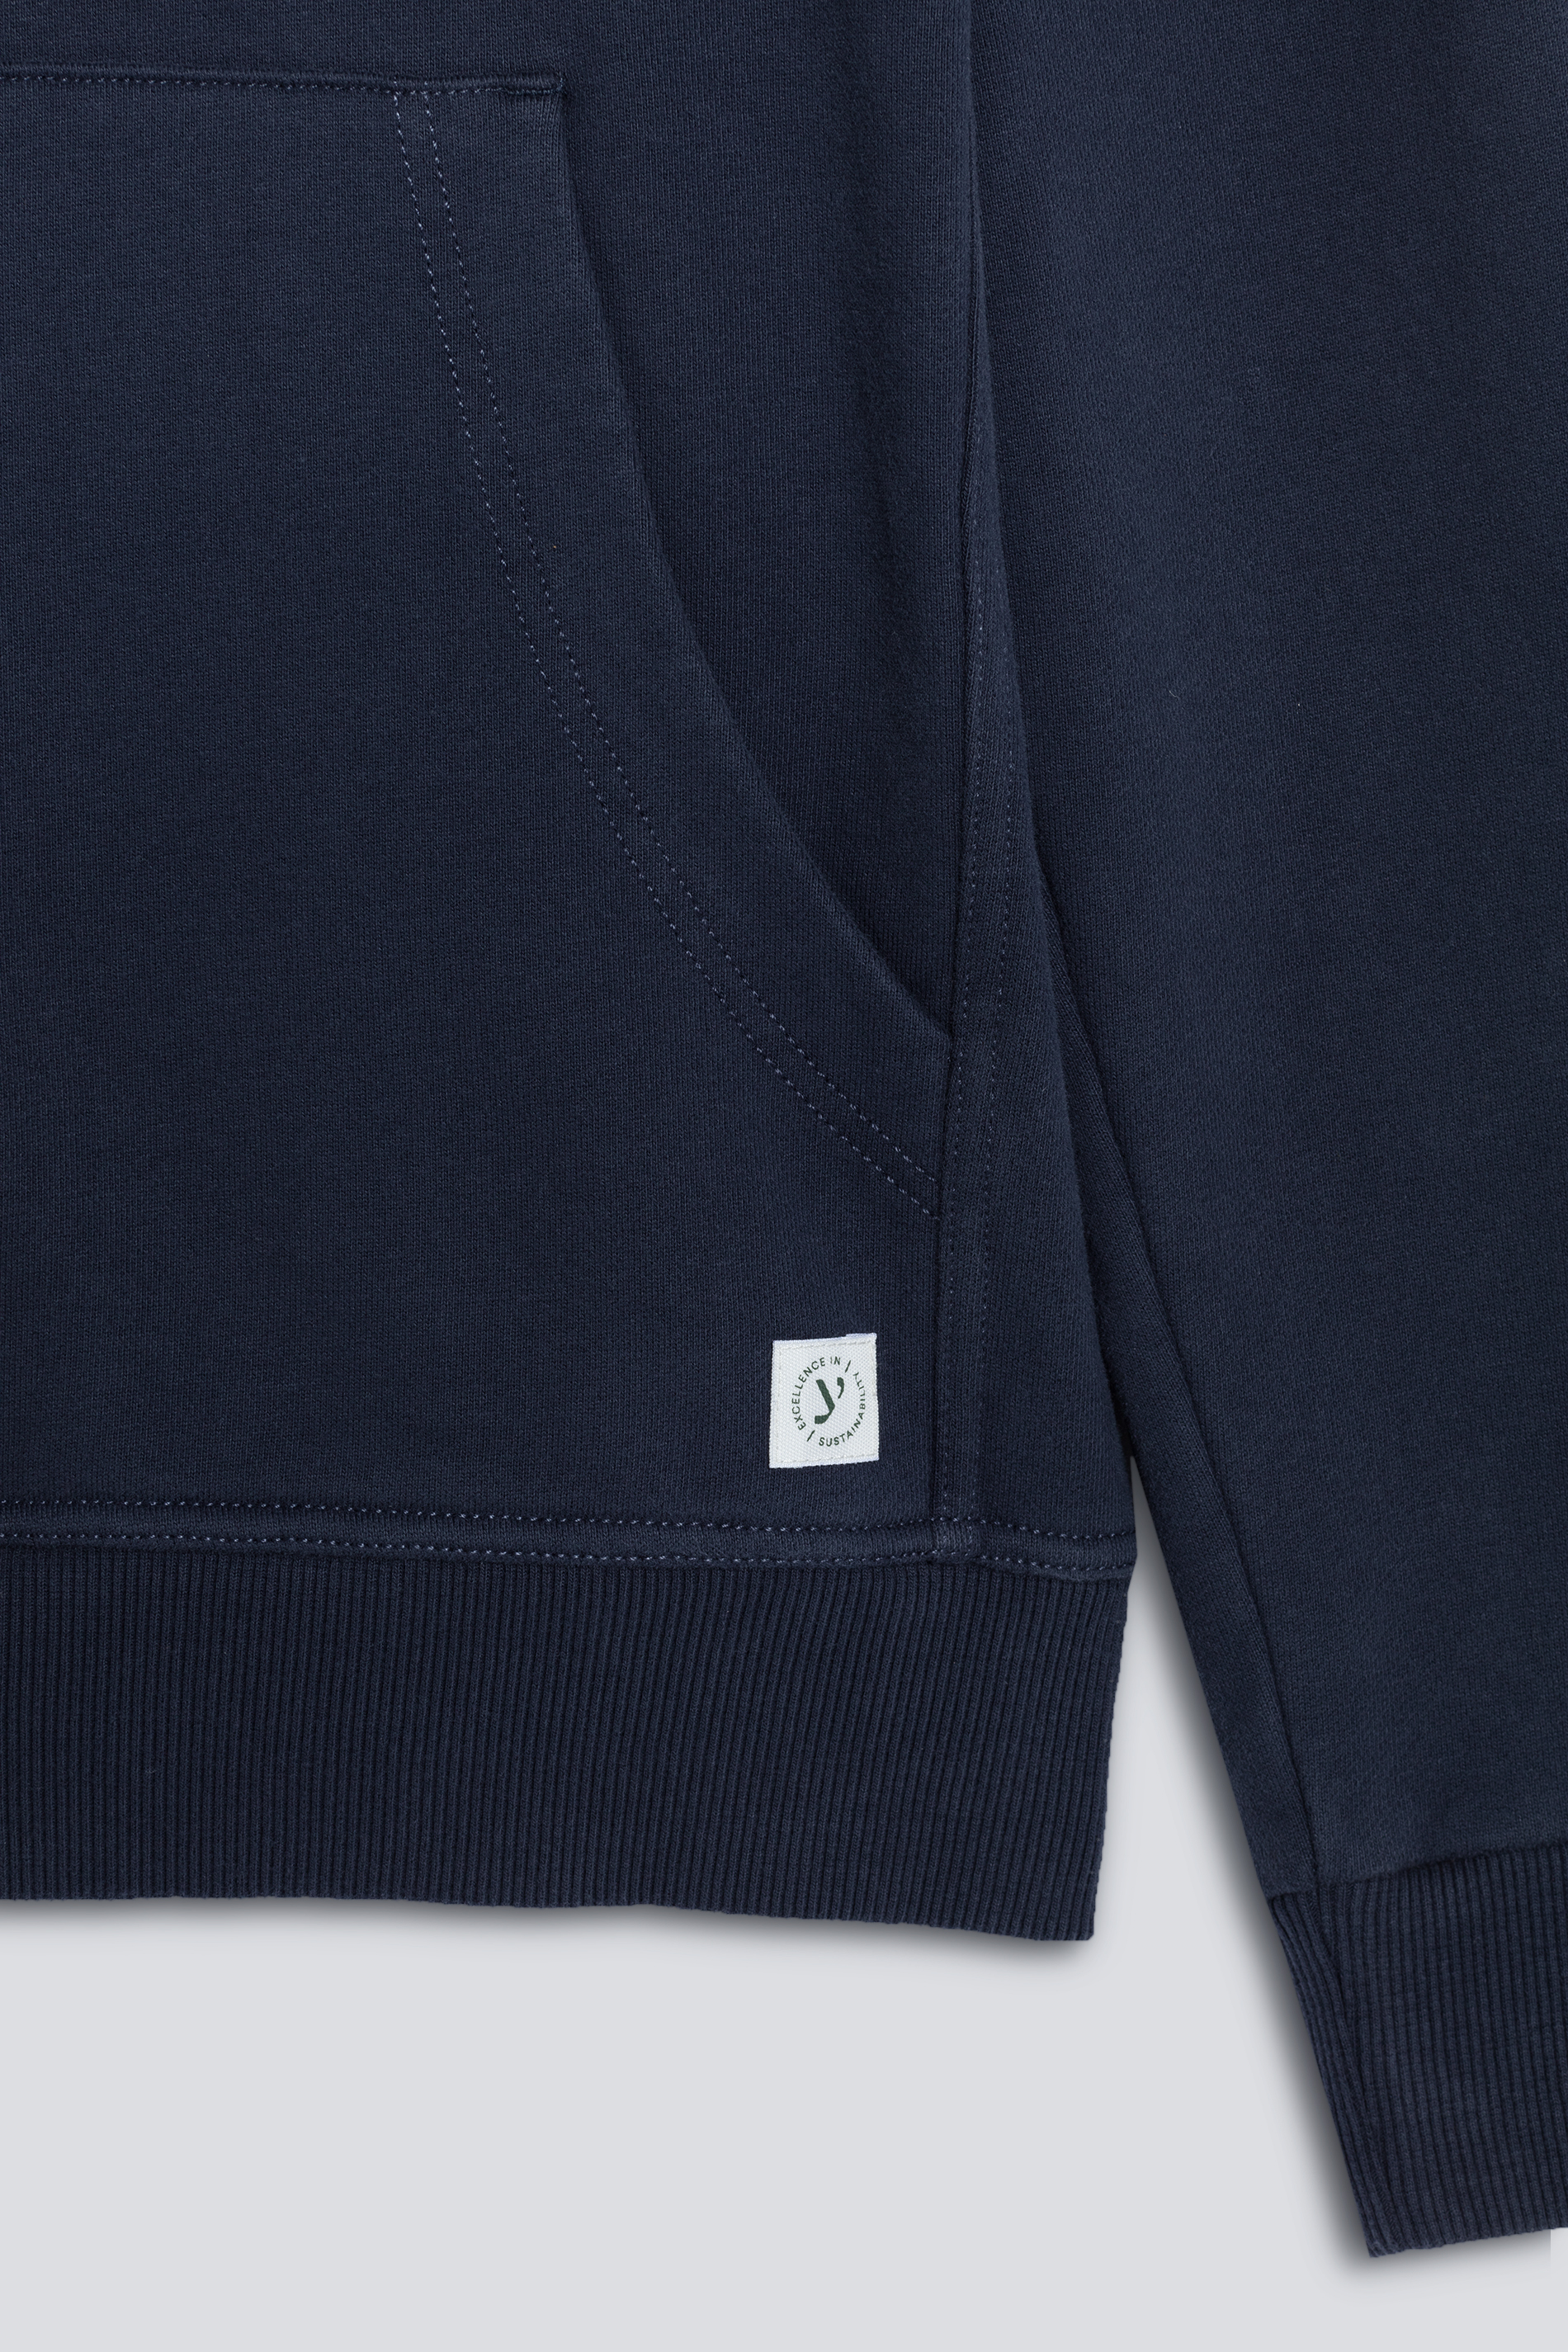 Hoodie sweatshirt Blue Nights Serie Soft Felpa Detail View 01 | mey®